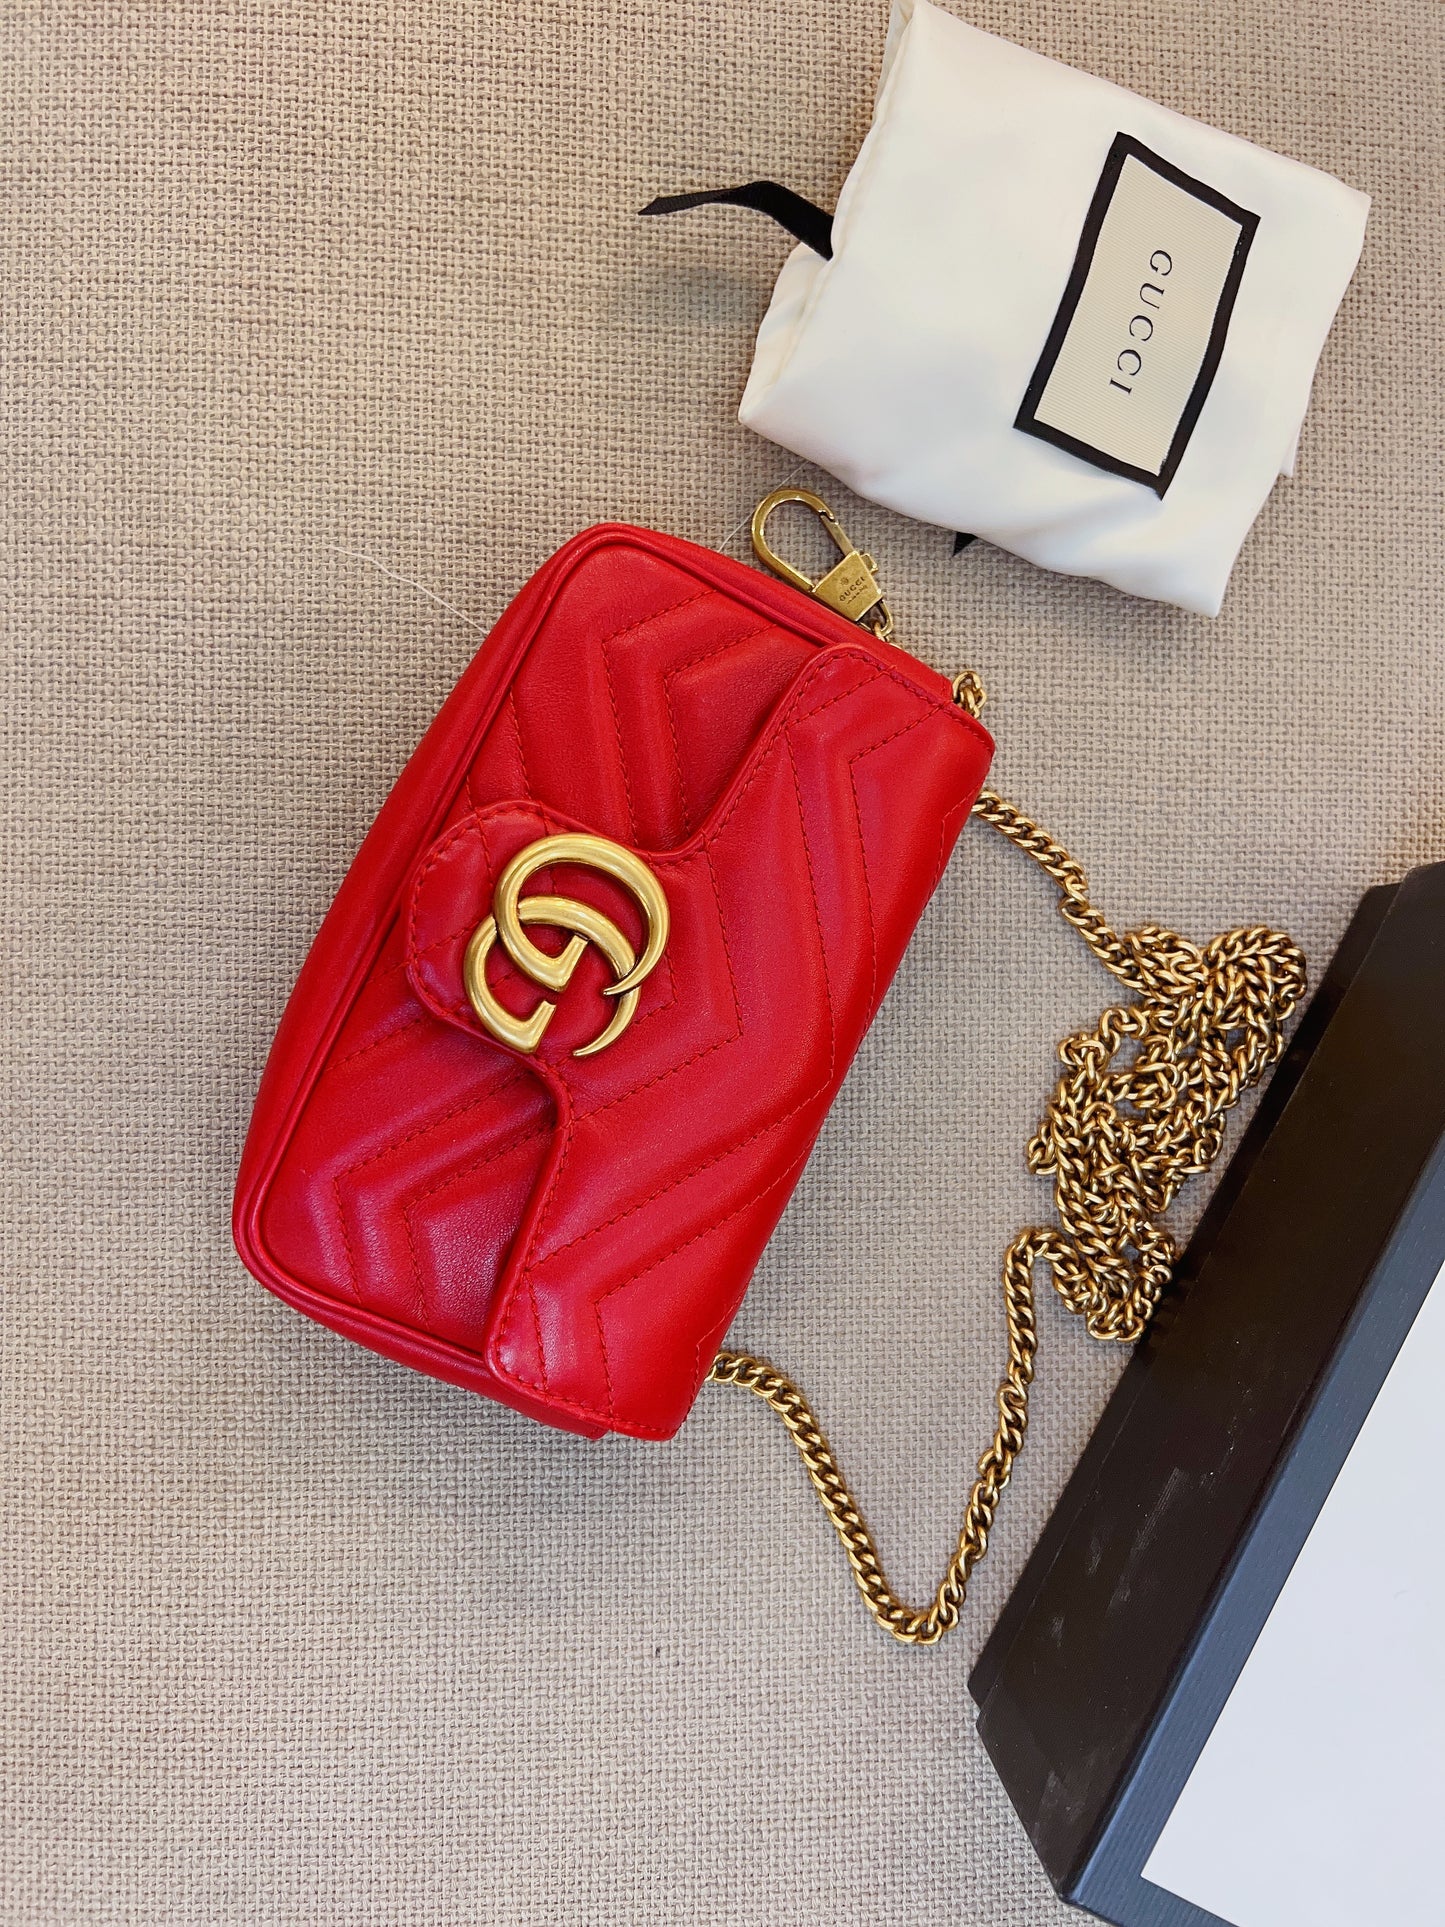 Gucci Marmont Super Mini Bag